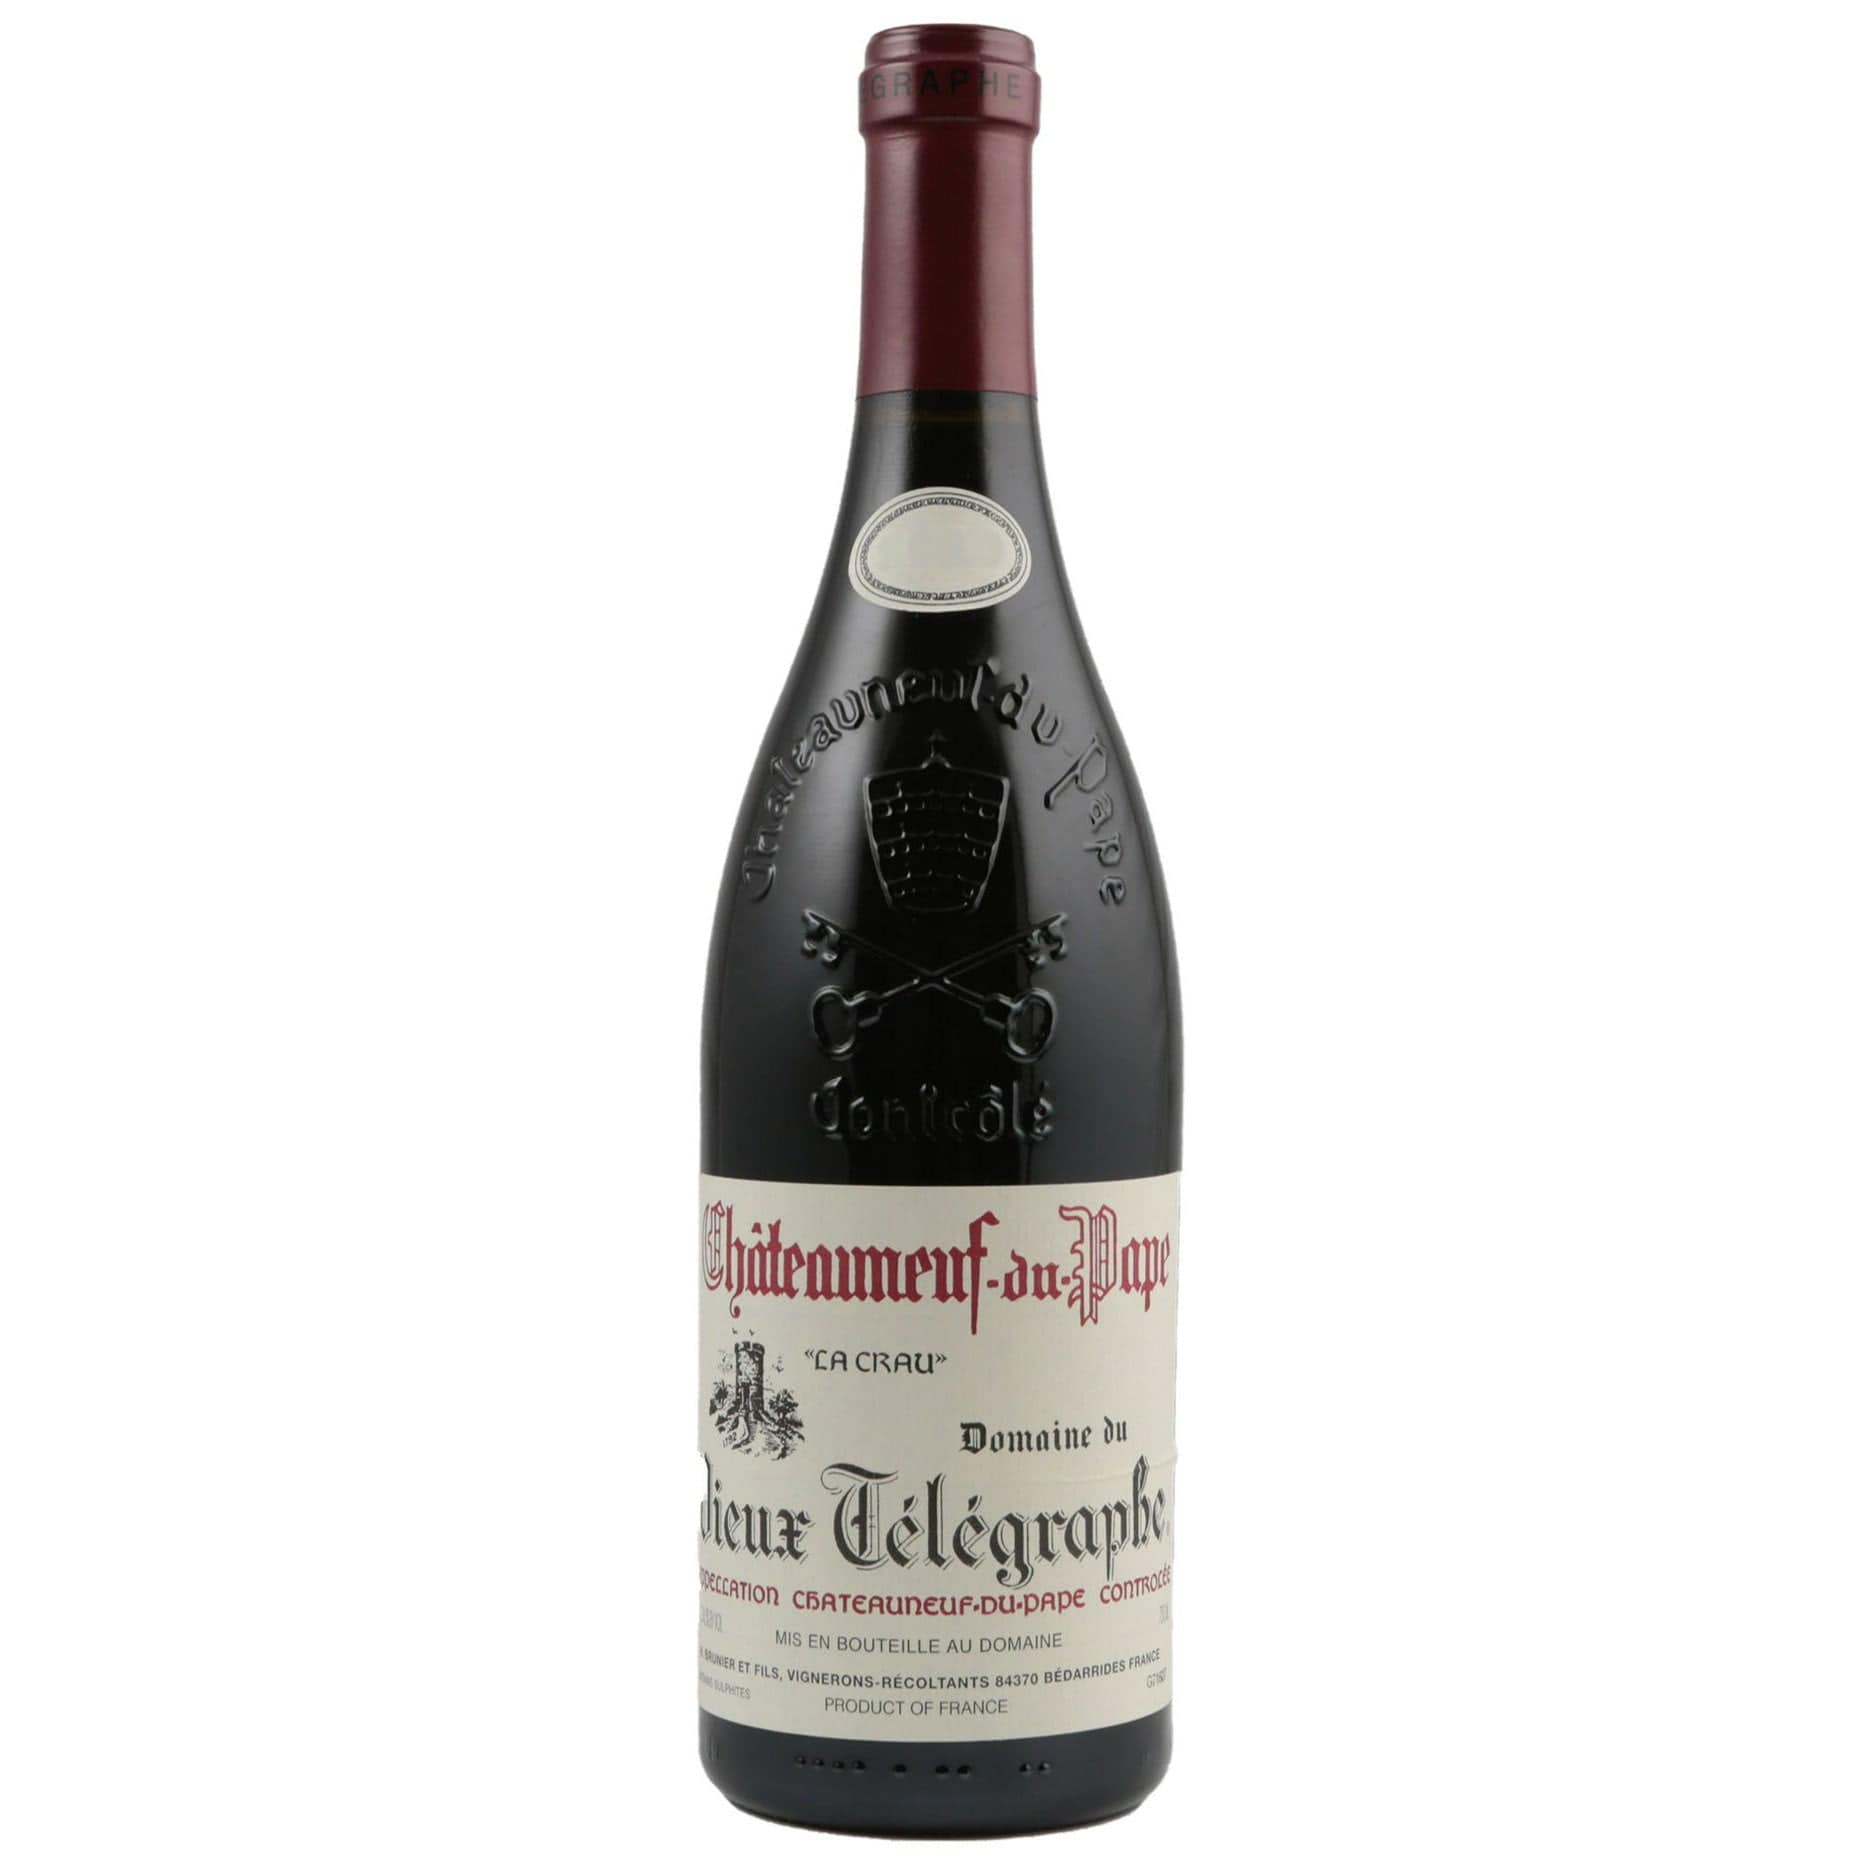 Single bottle of Red wine Domaine du Vieux Telegraphe (Brunier), La Crau, Chateauneuf du Pape, 2009 65% Grenache, 15% Mourvedre, 5% Syrah, 5% Cinsault, 5% Clairette & 5% Other